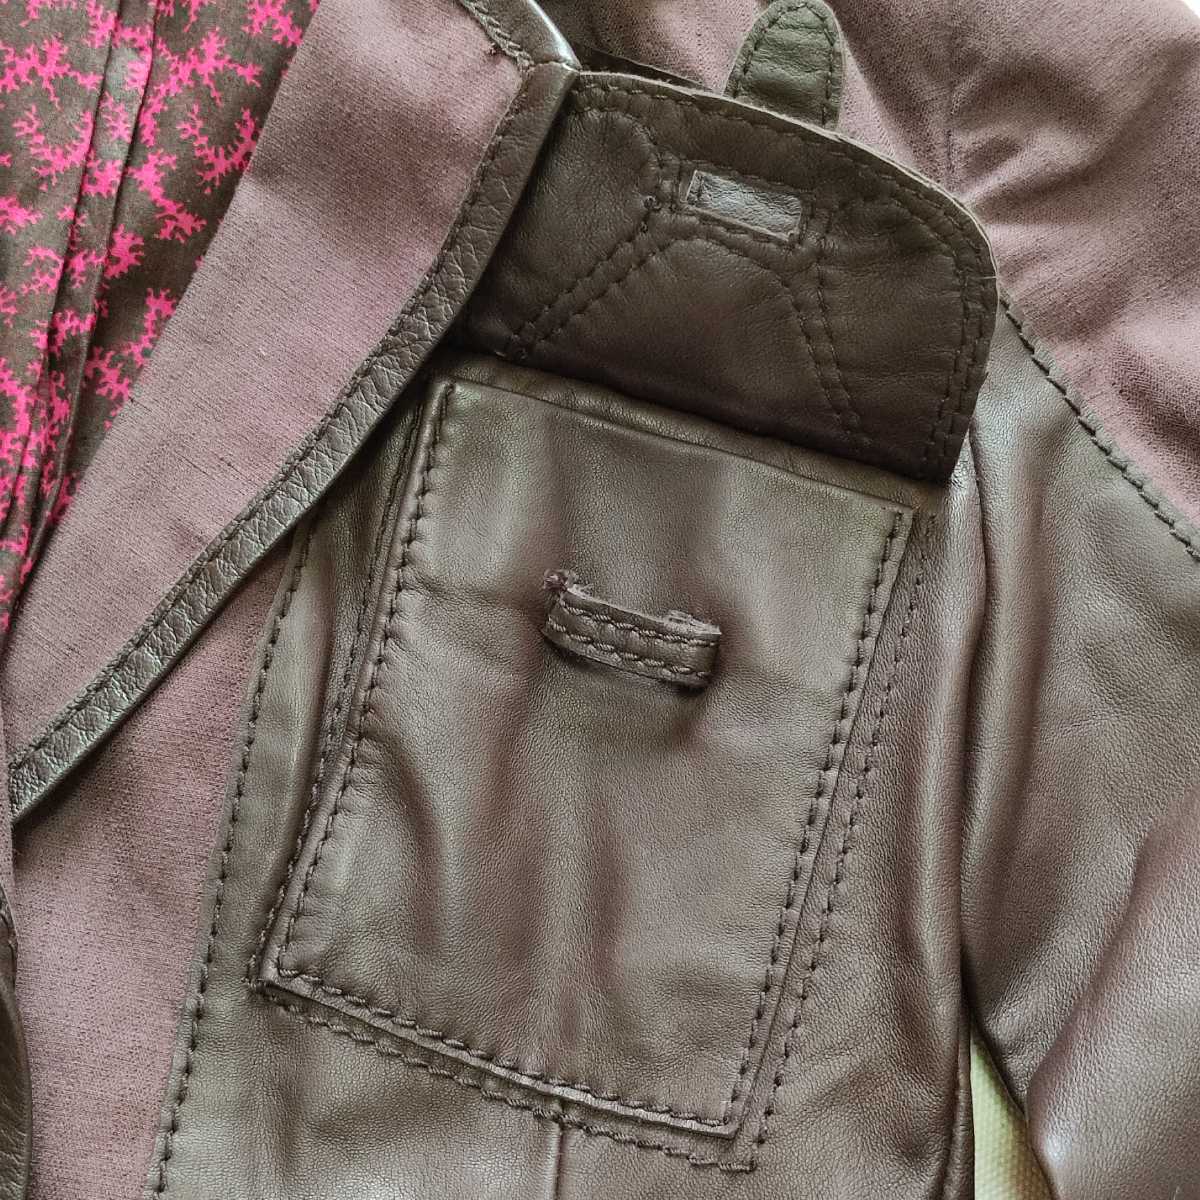 KENZO овечья кожа / хлопок лен переключатель tailored jacket Brown женский 38 EU производства 